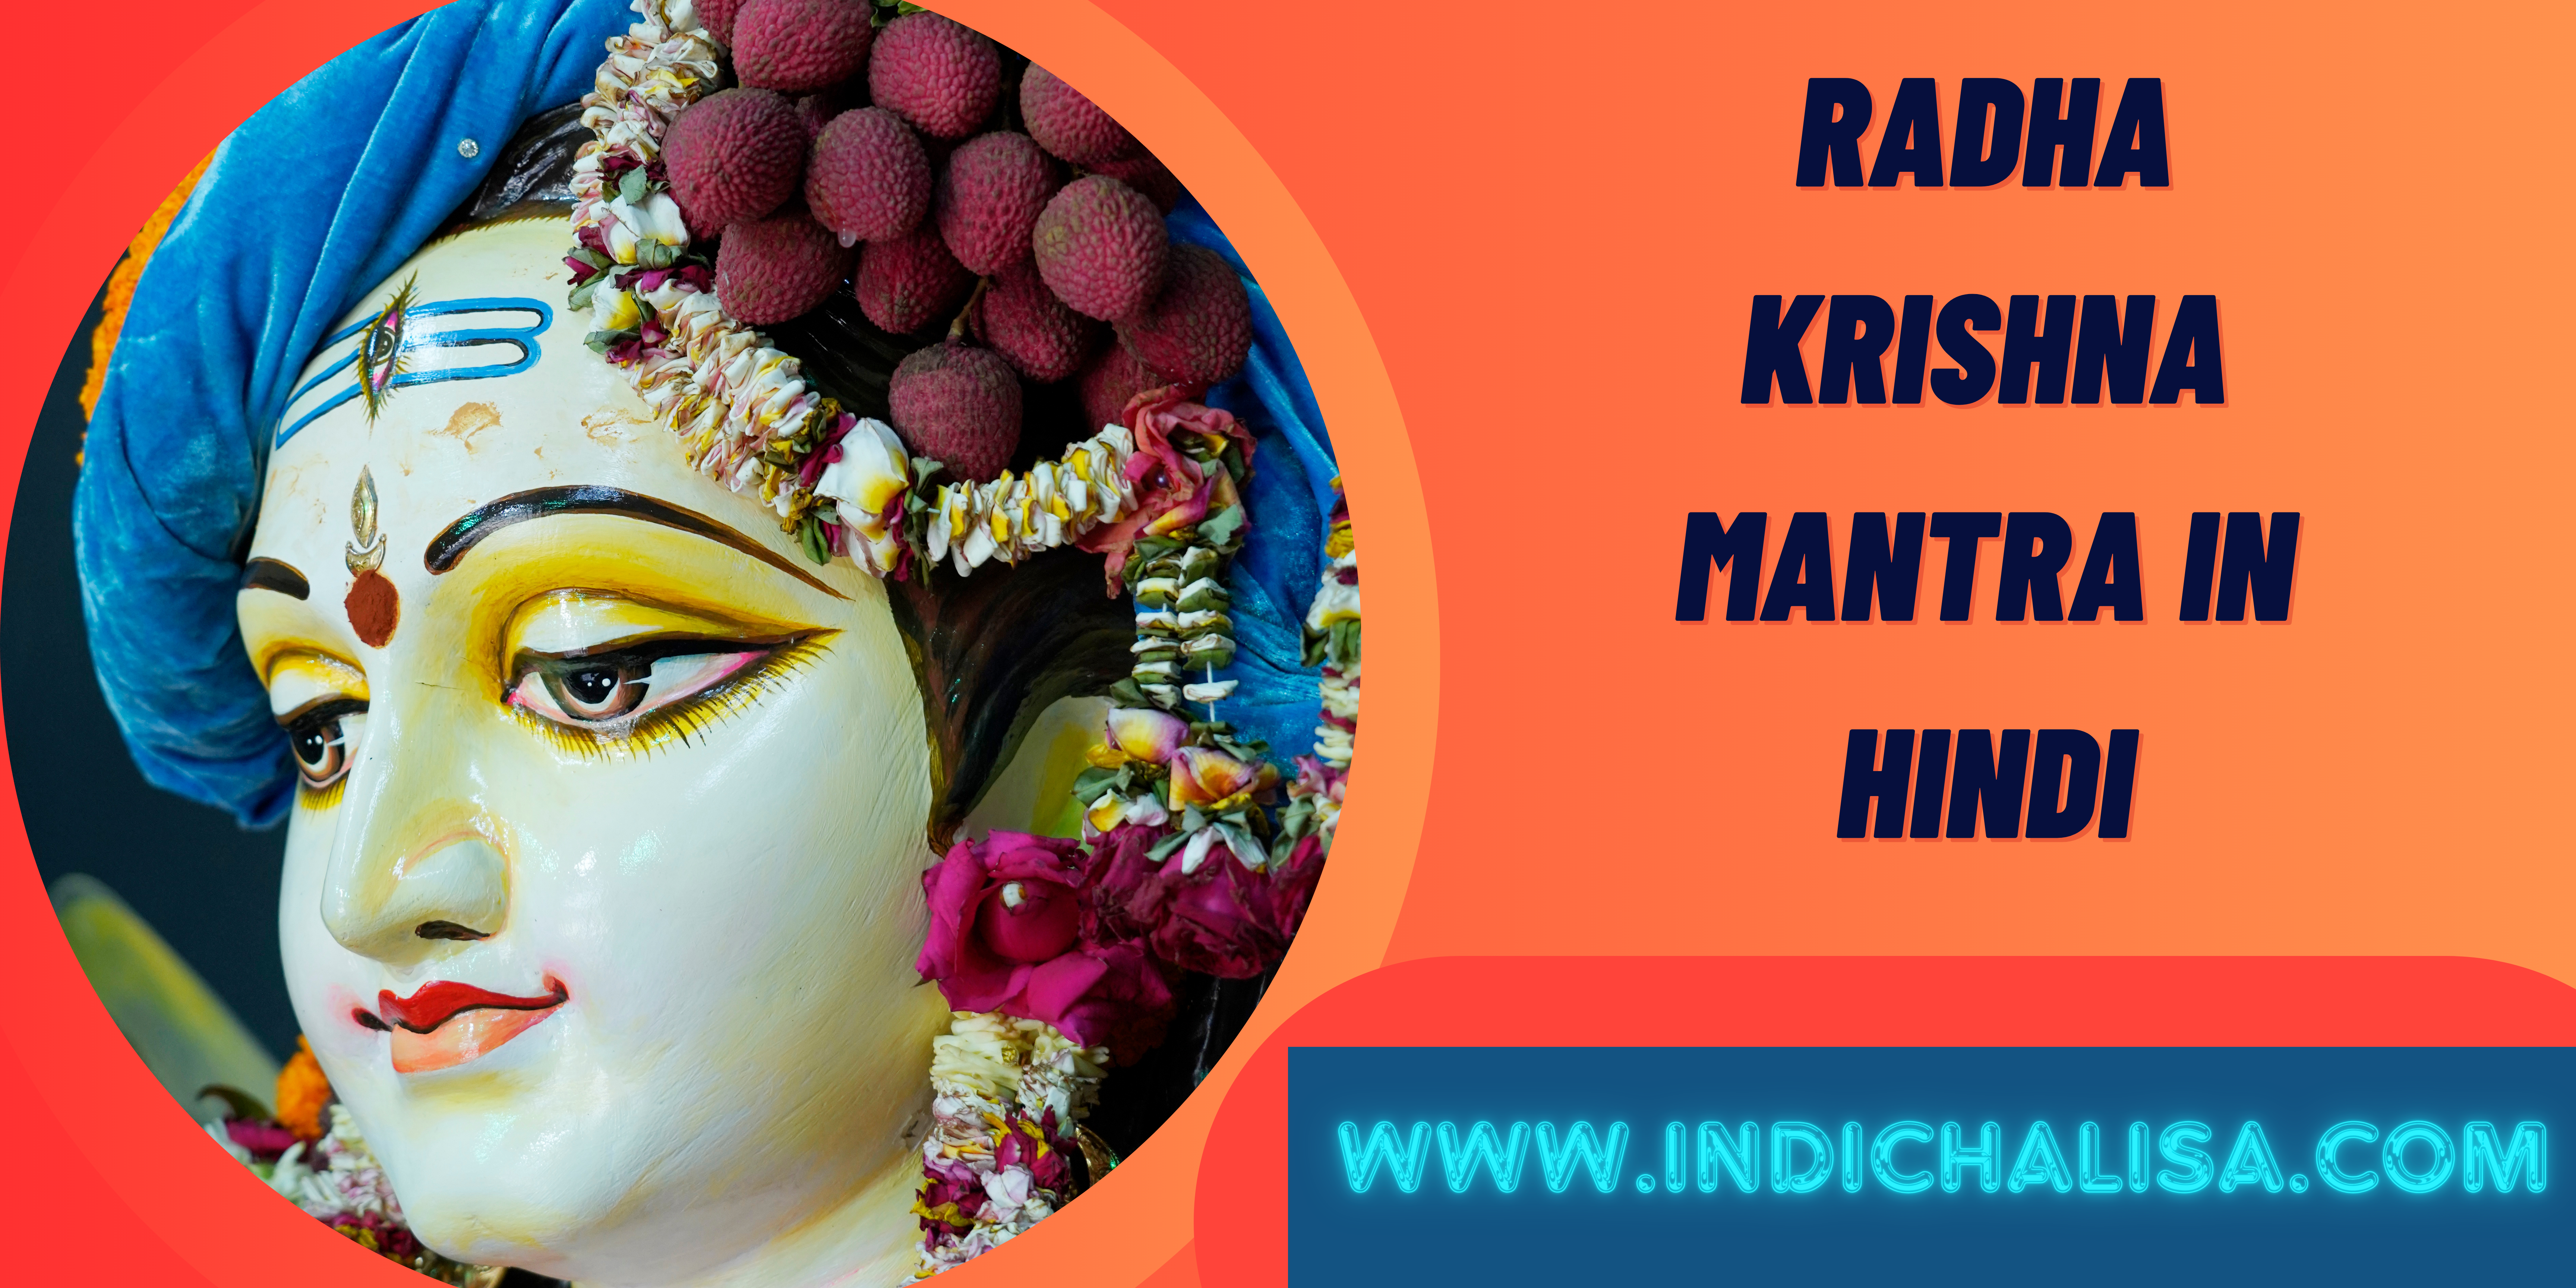 Radha Krishna Mantra In Hindi|Radha Krishna Mantra In Hindi|Indichalisa|Indichalisa